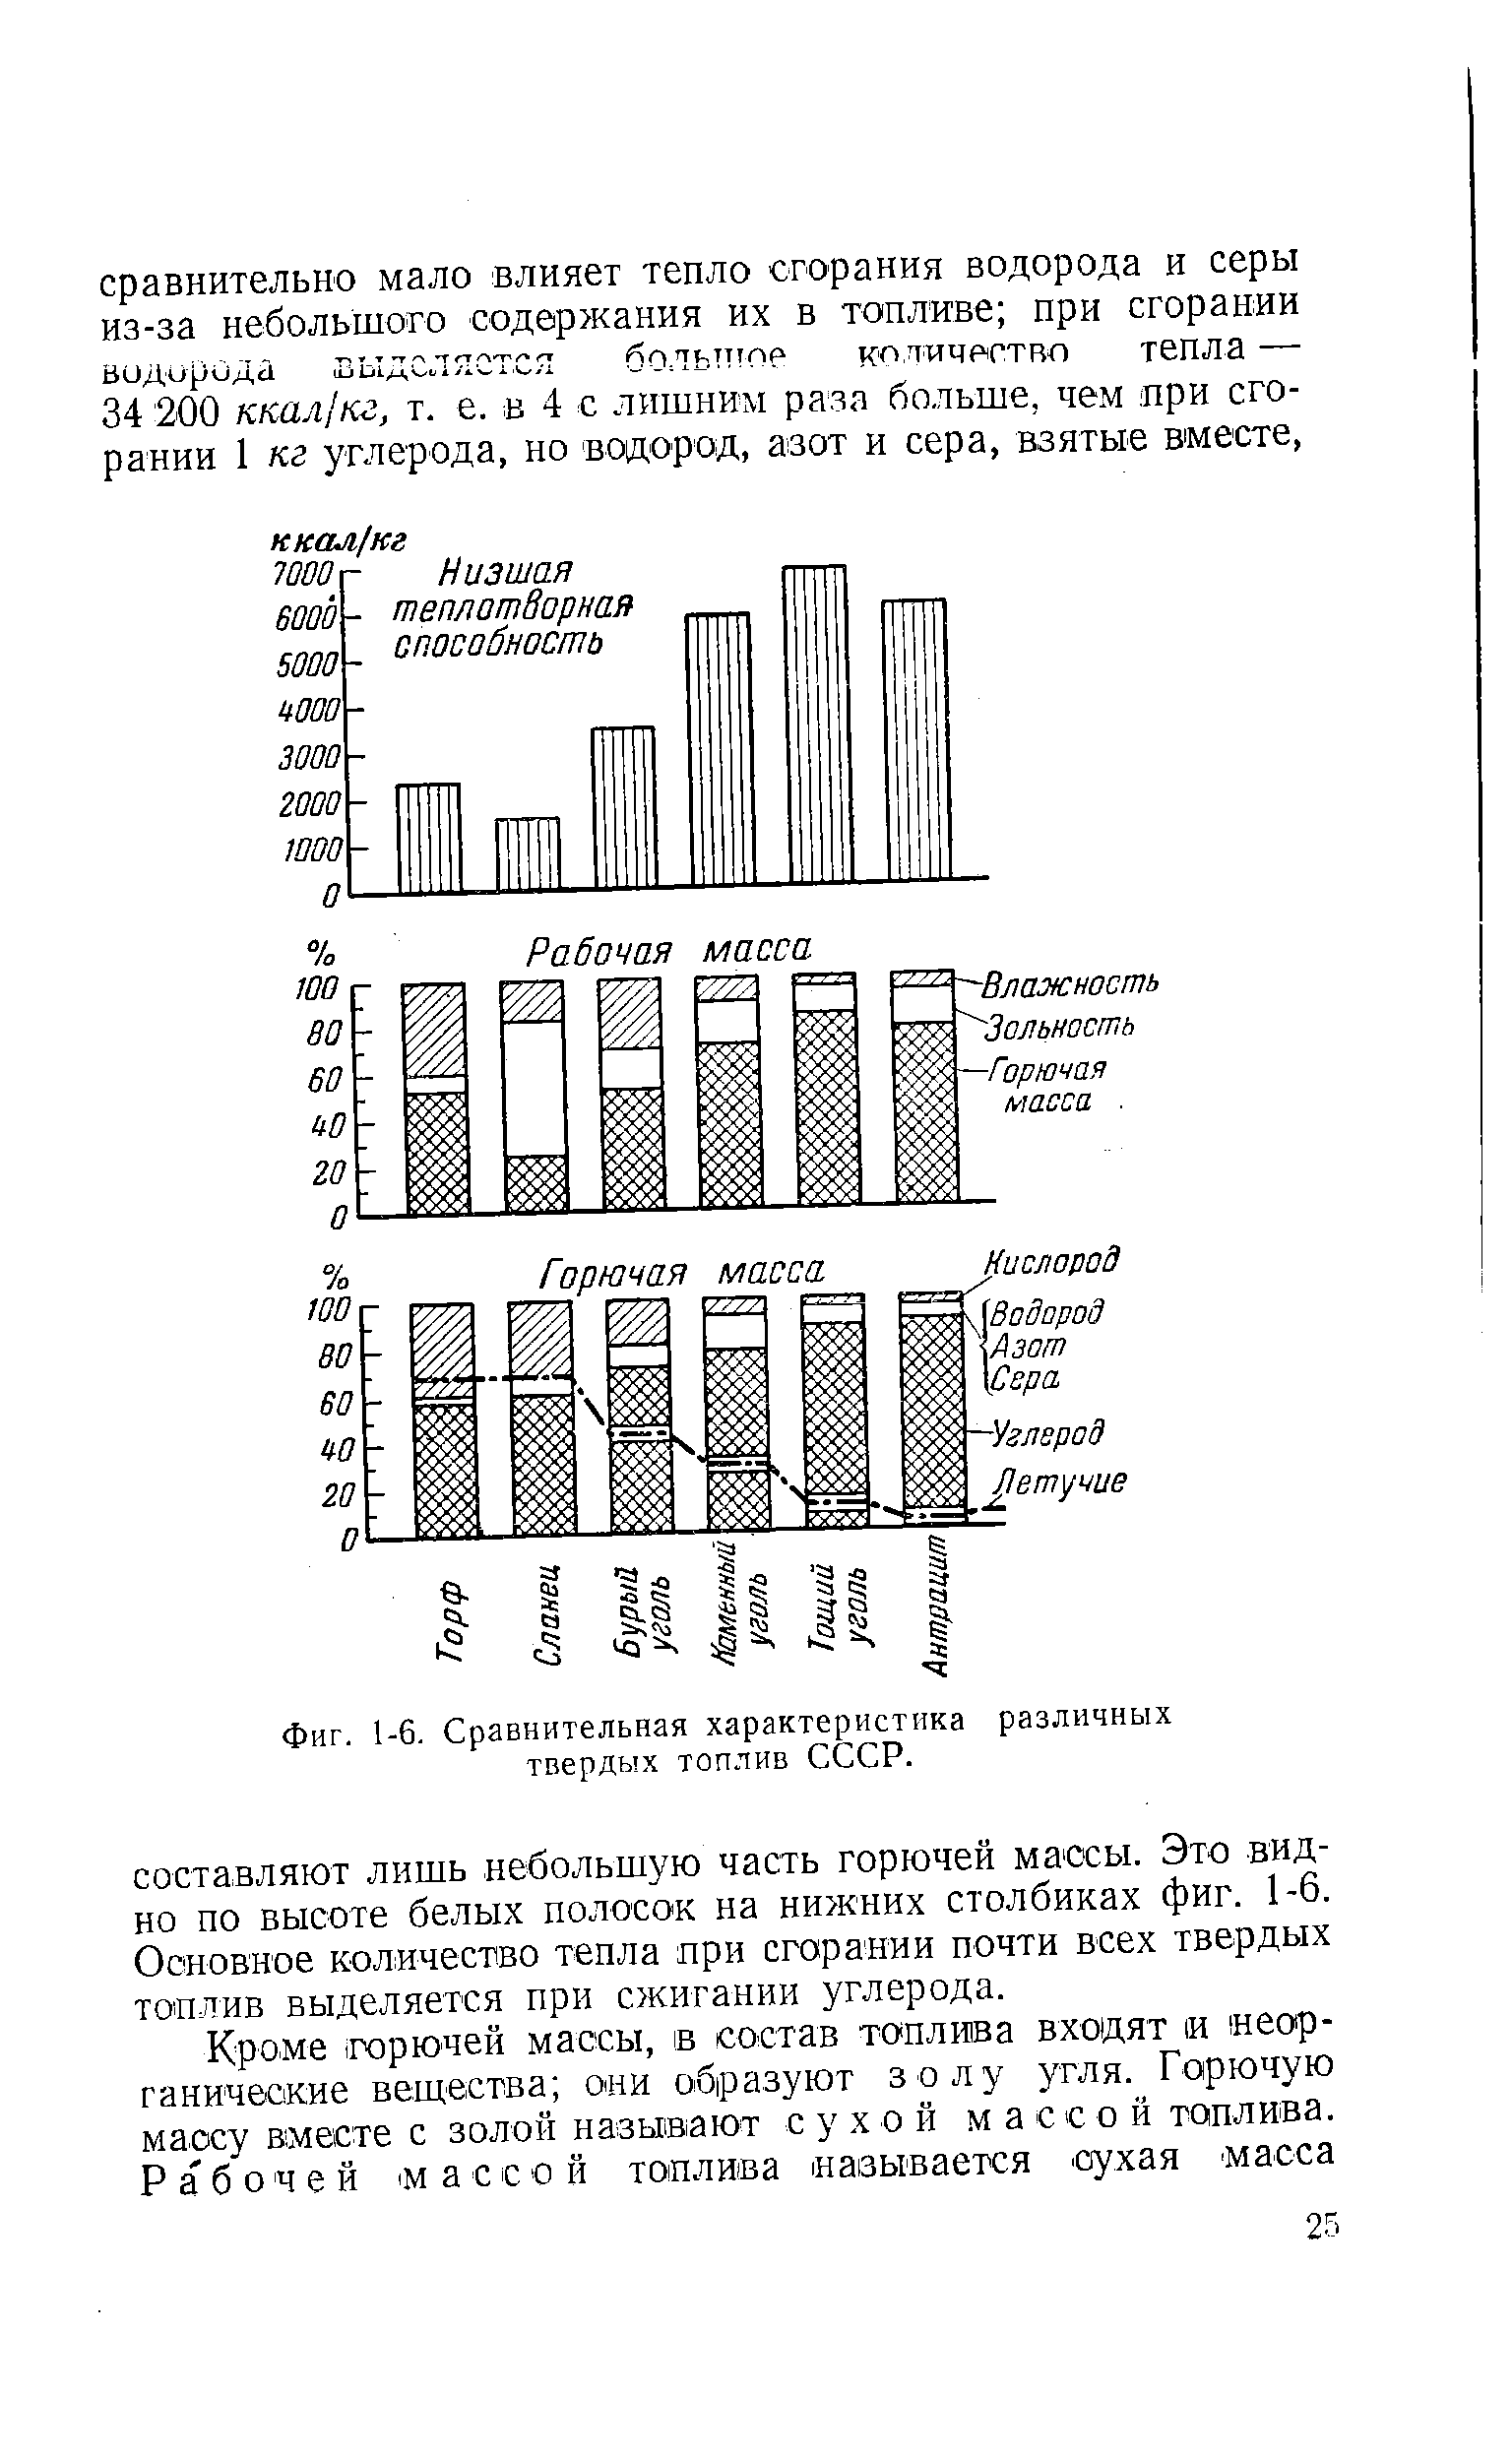 Фиг. 1-6. Сравнительная характеристика различных твердых топлив СССР.
